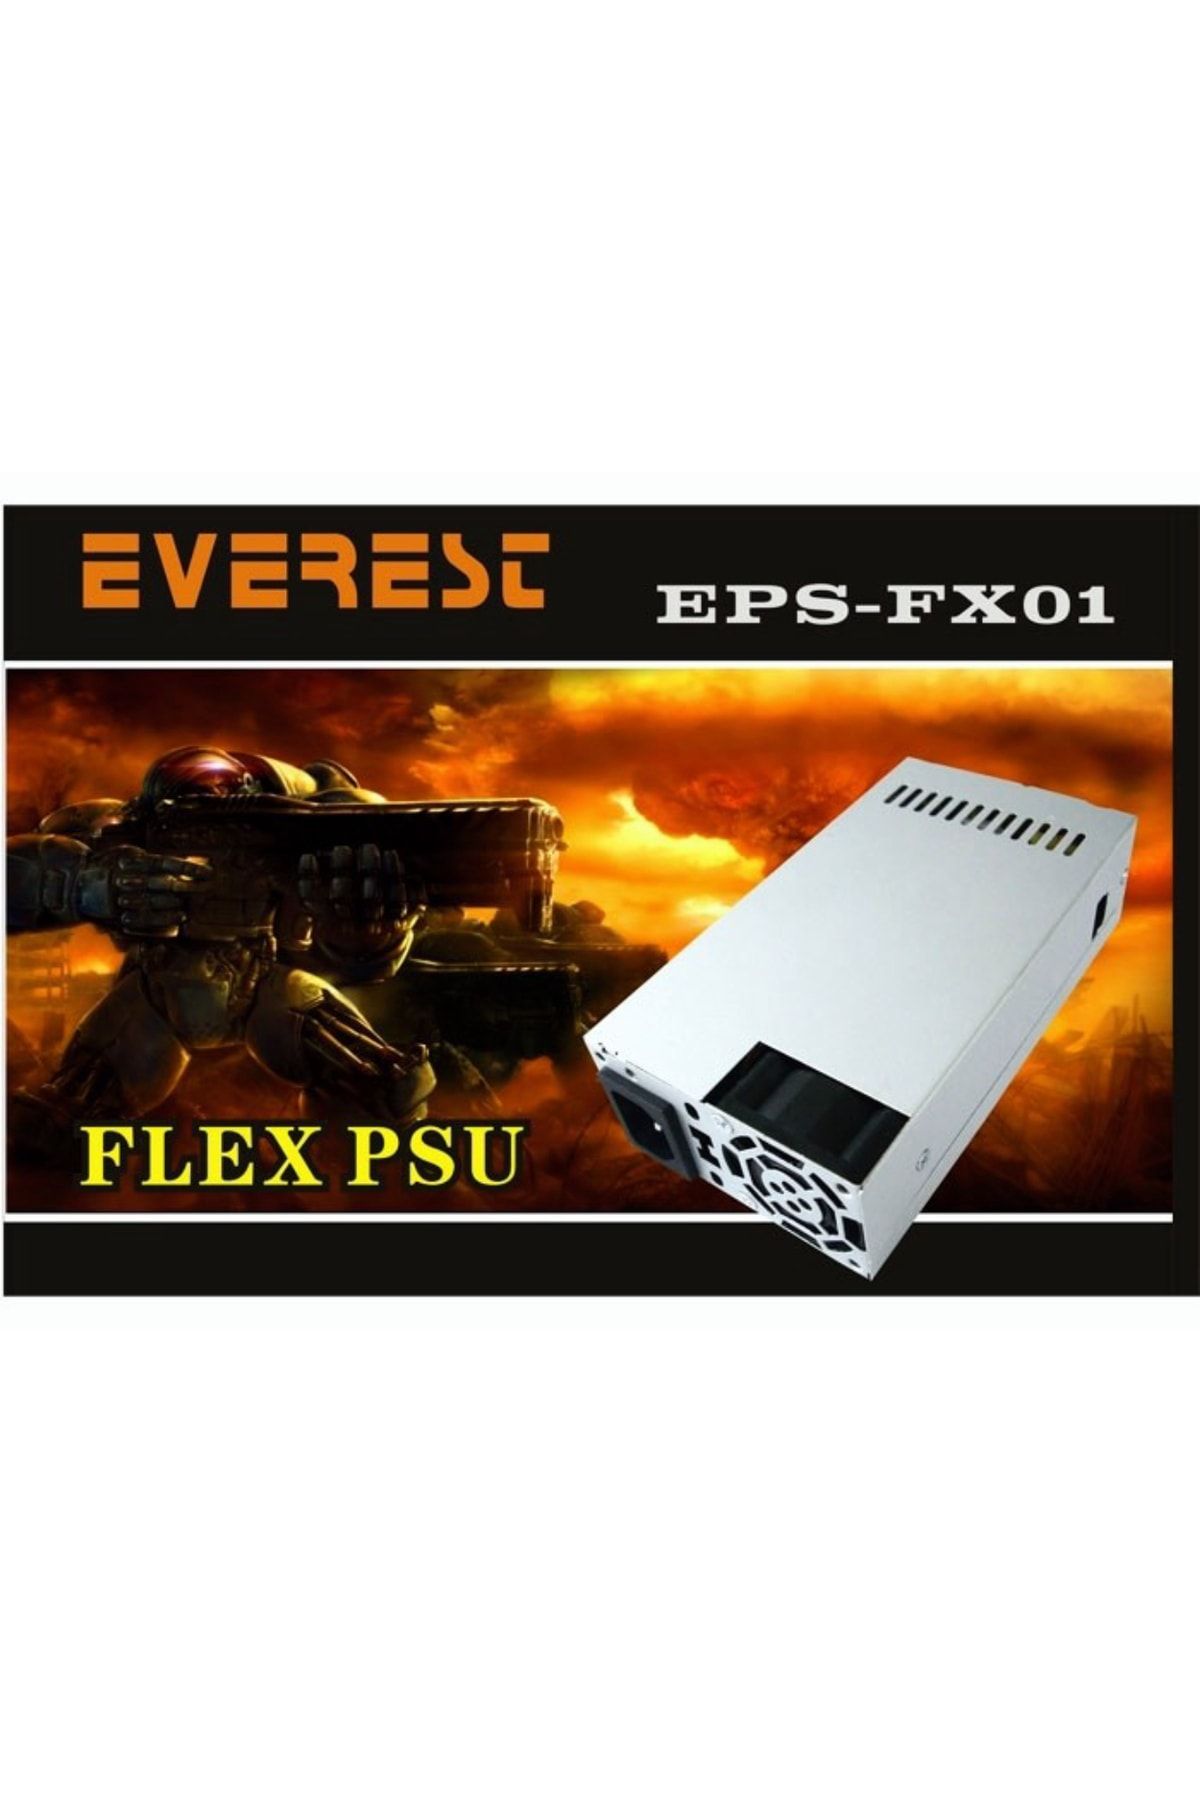 Everest Eps-fx01 Slım 200w 4cm Fan 2 Sata 2 Ide Flex Power Supply